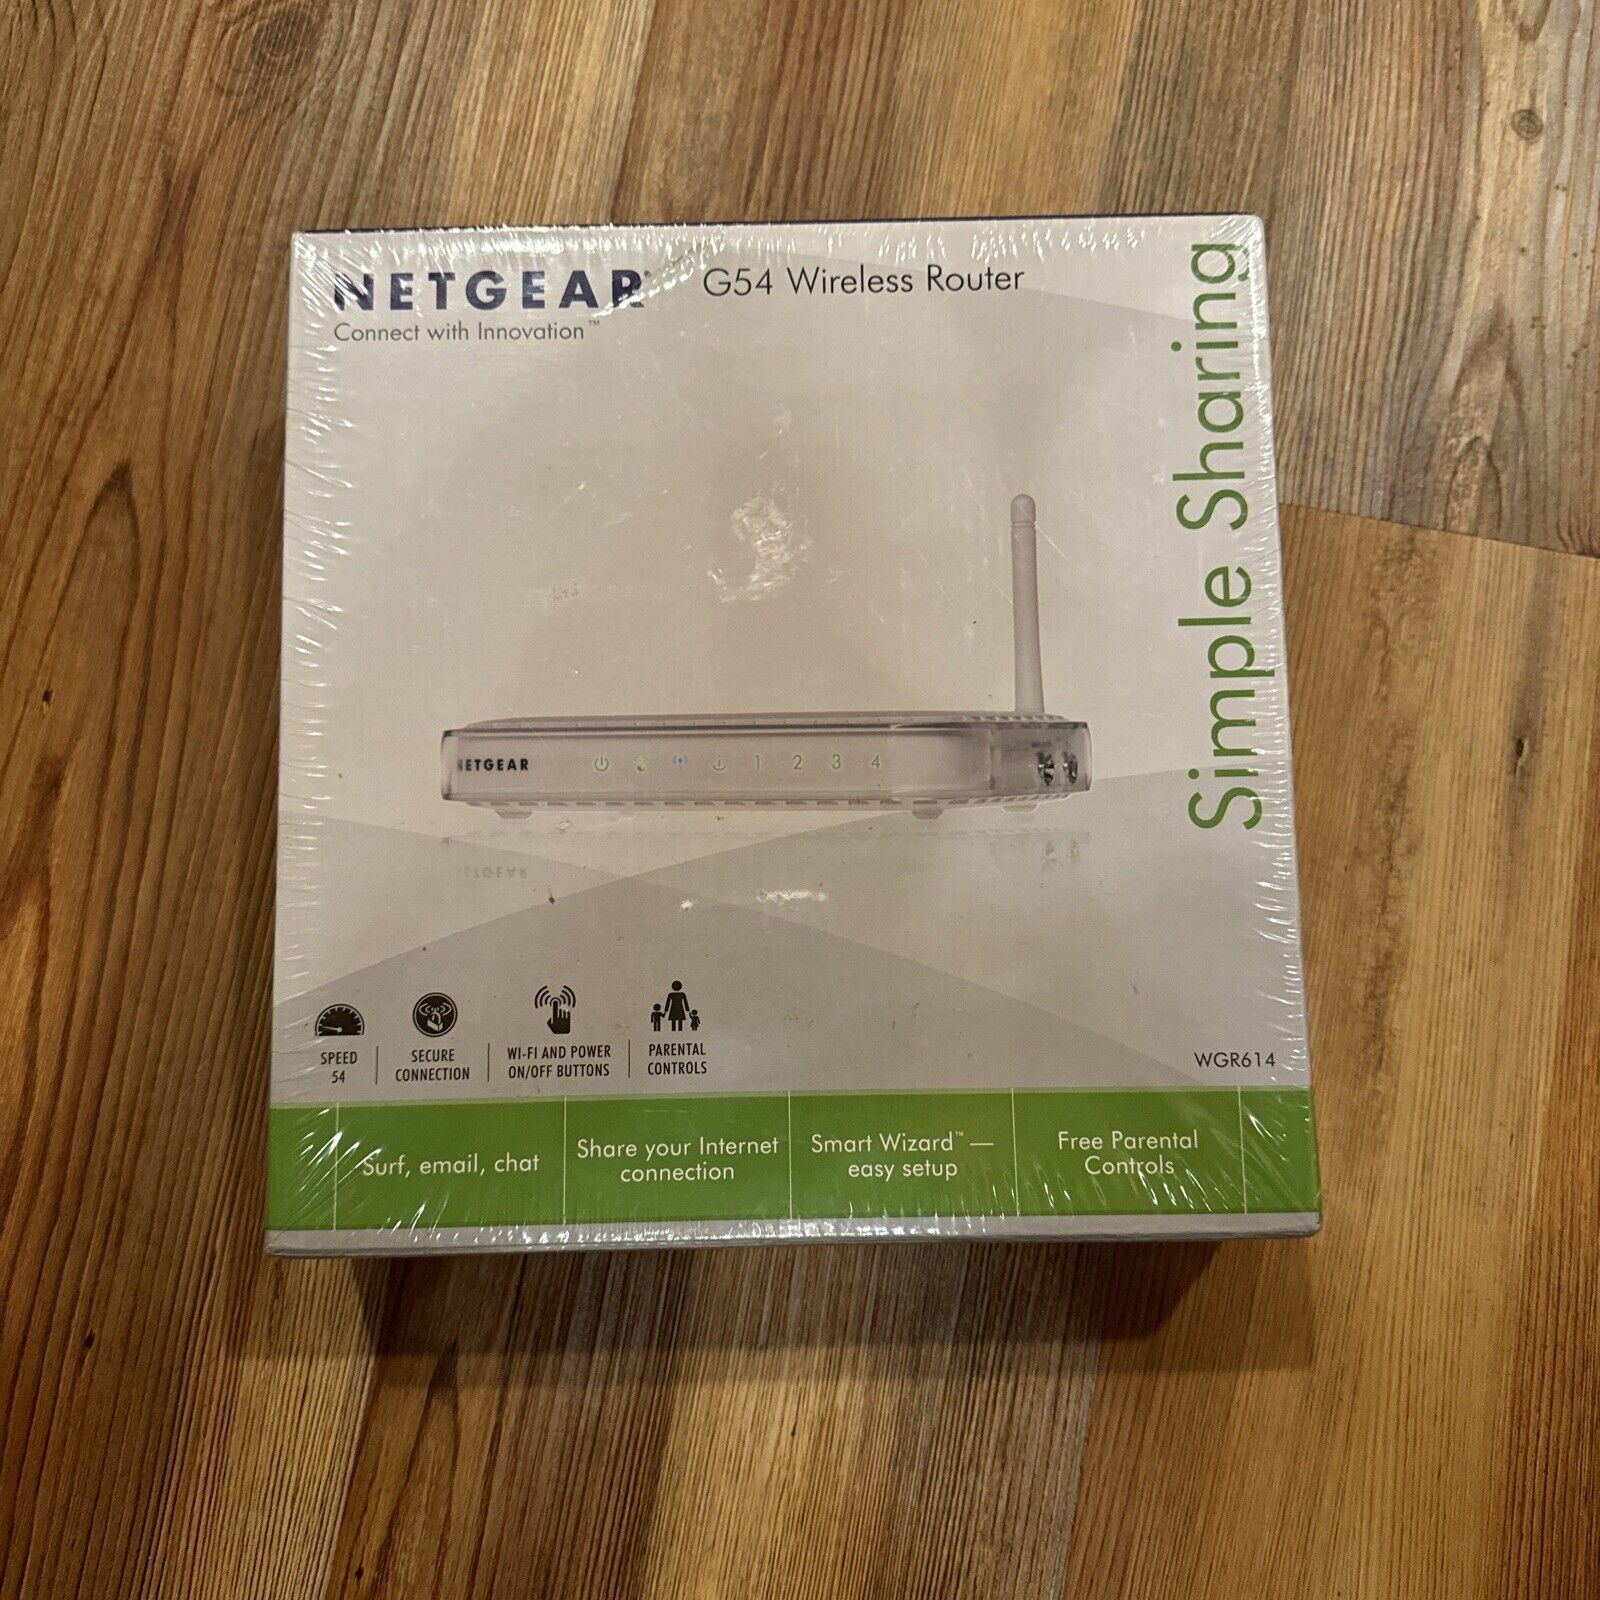 NETGEAR G54 Wireless Router Model WGR614